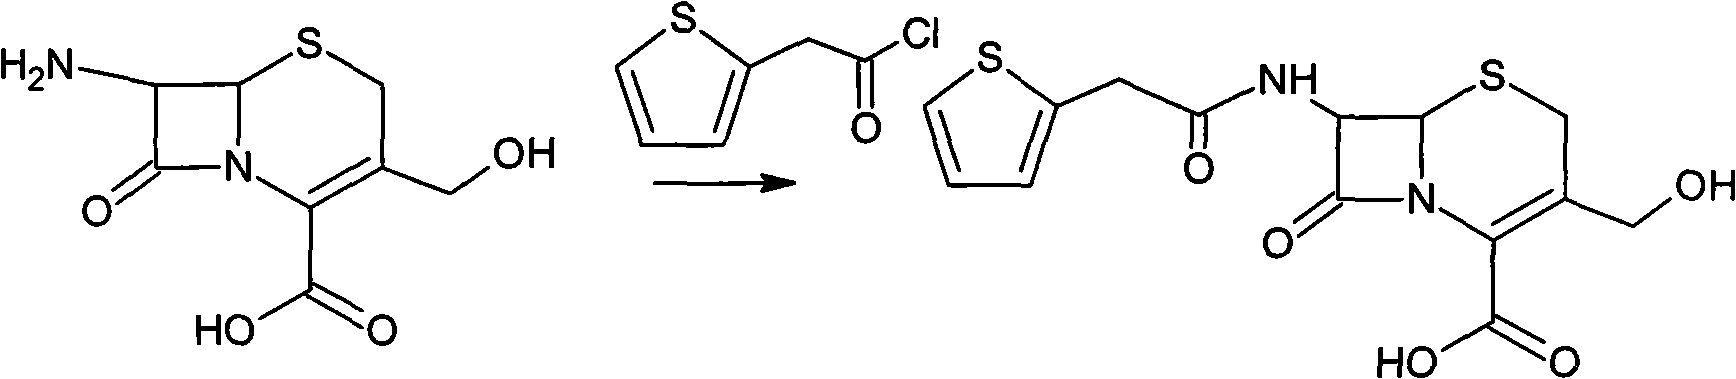 Method for preparing cefoxitin sodium